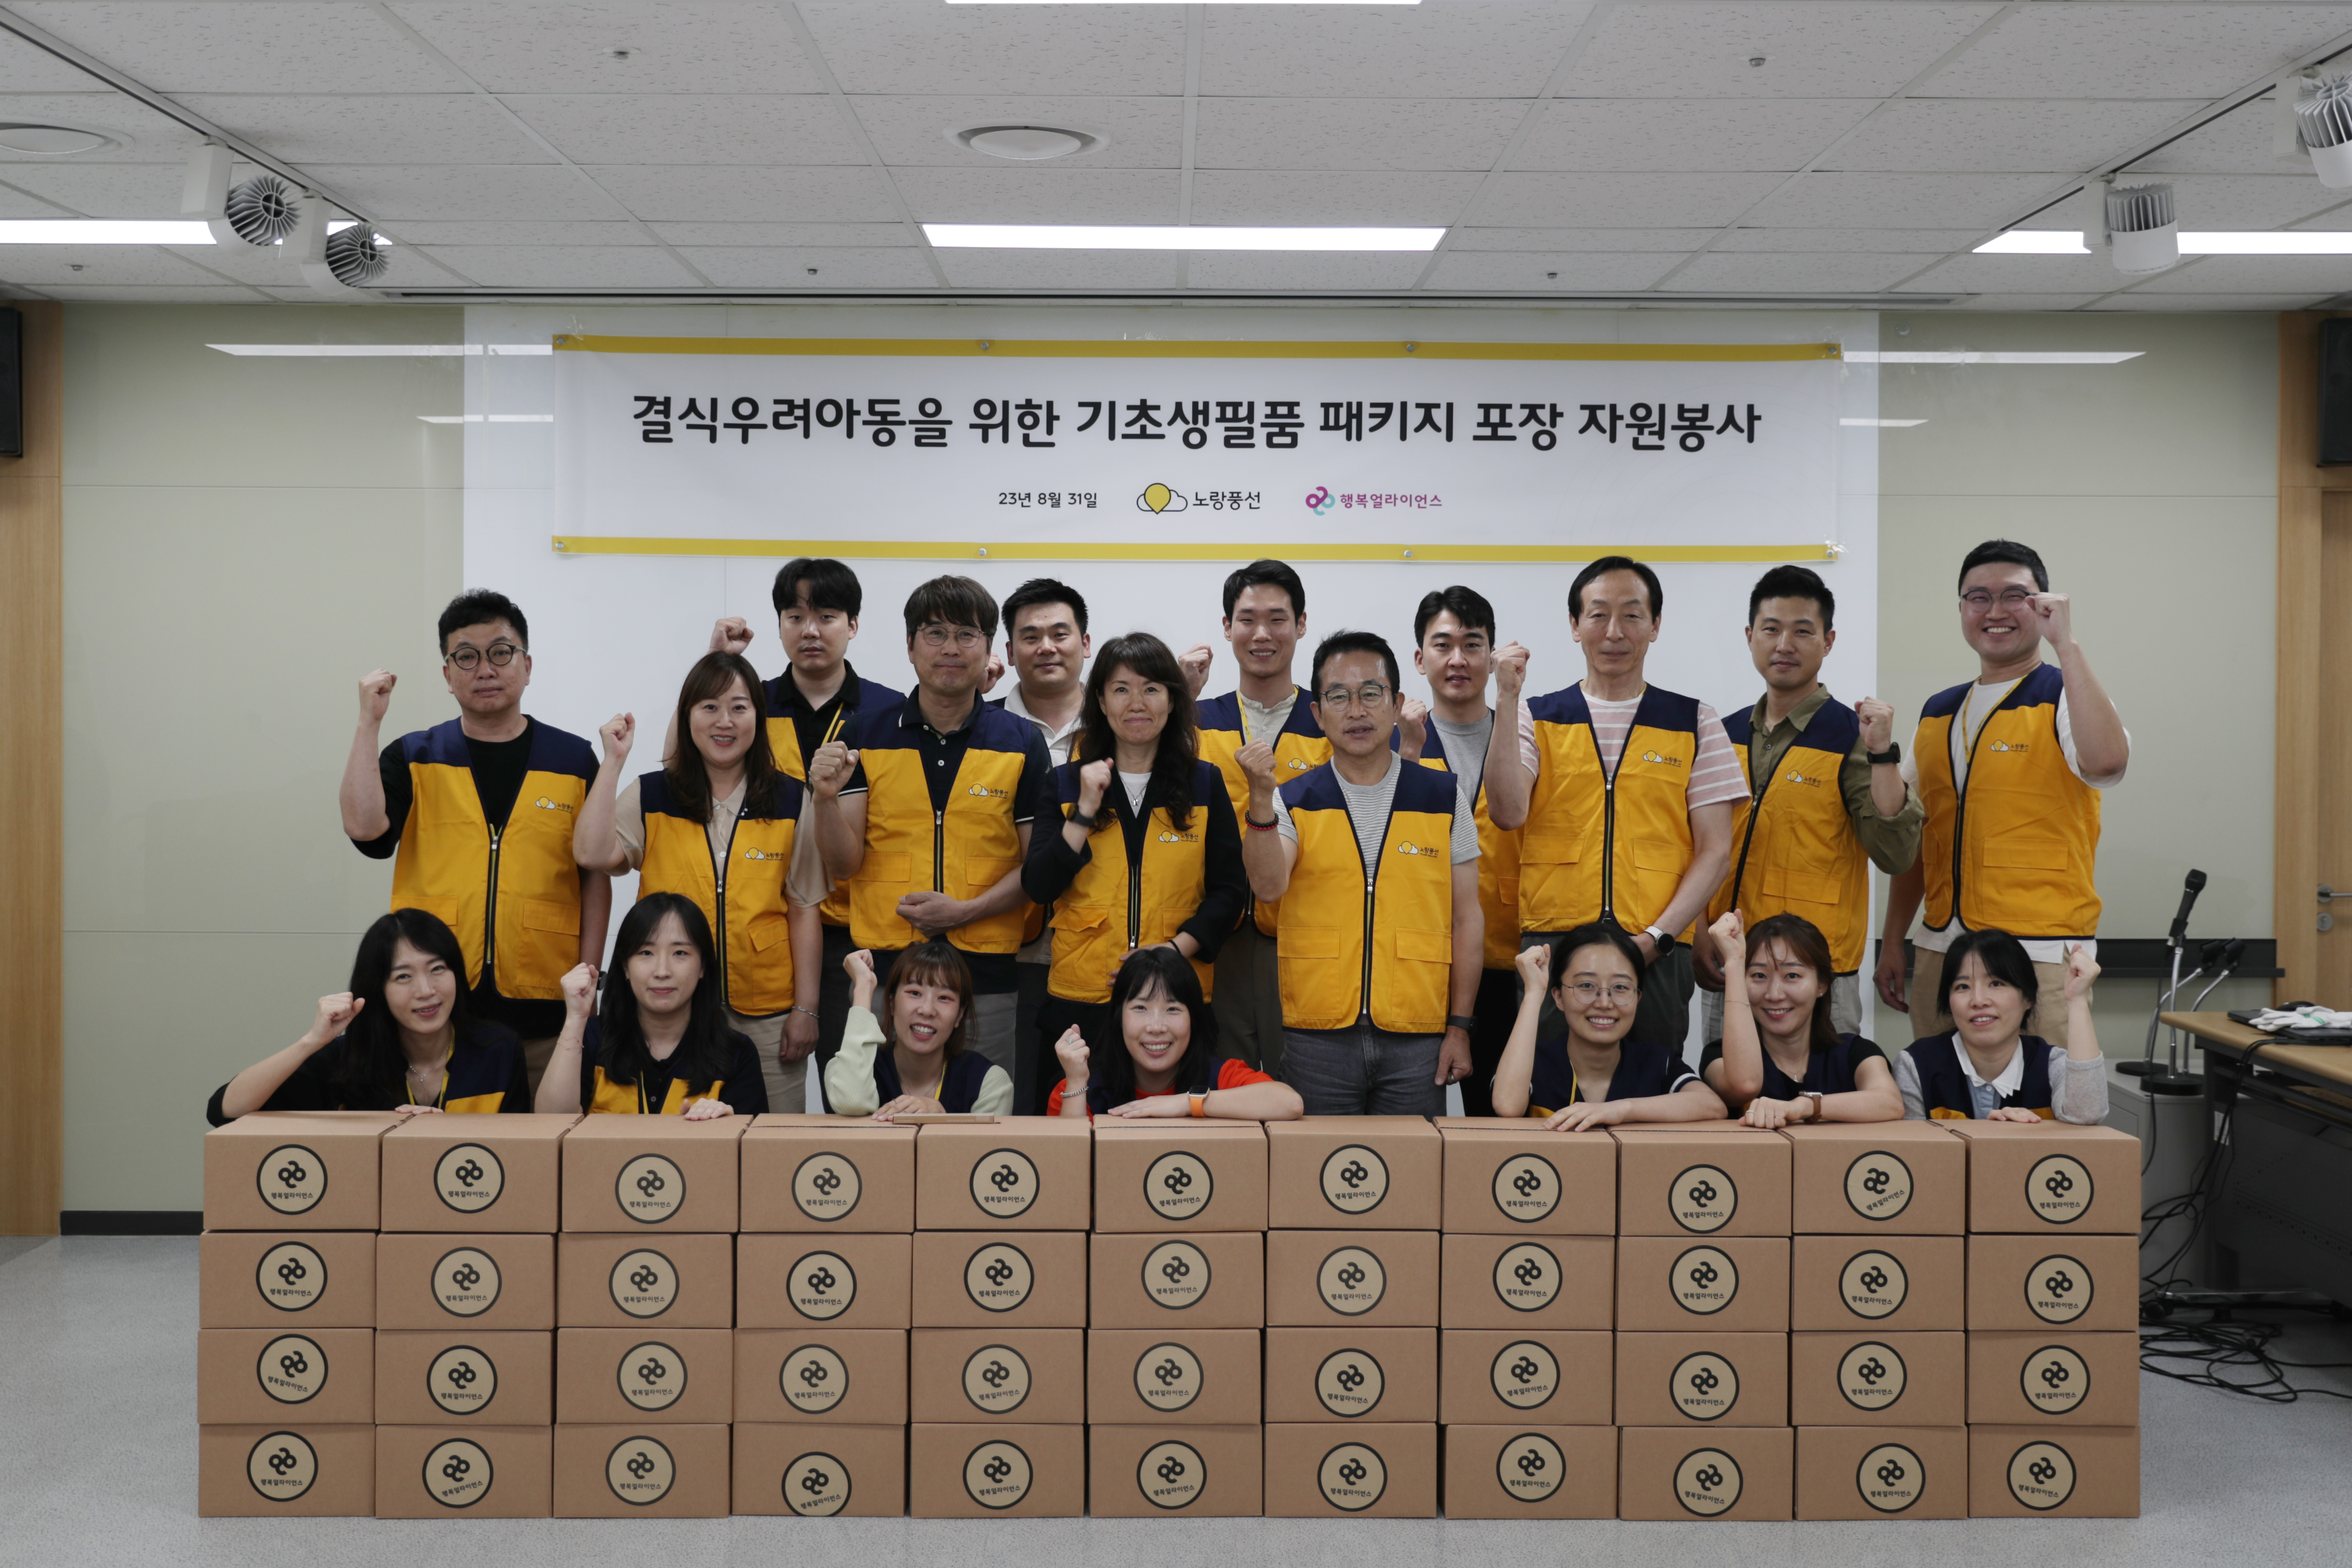 [뉴스핌] 노랑풍선, 행복얼라이언스와 취약계층 봉사활동 진행